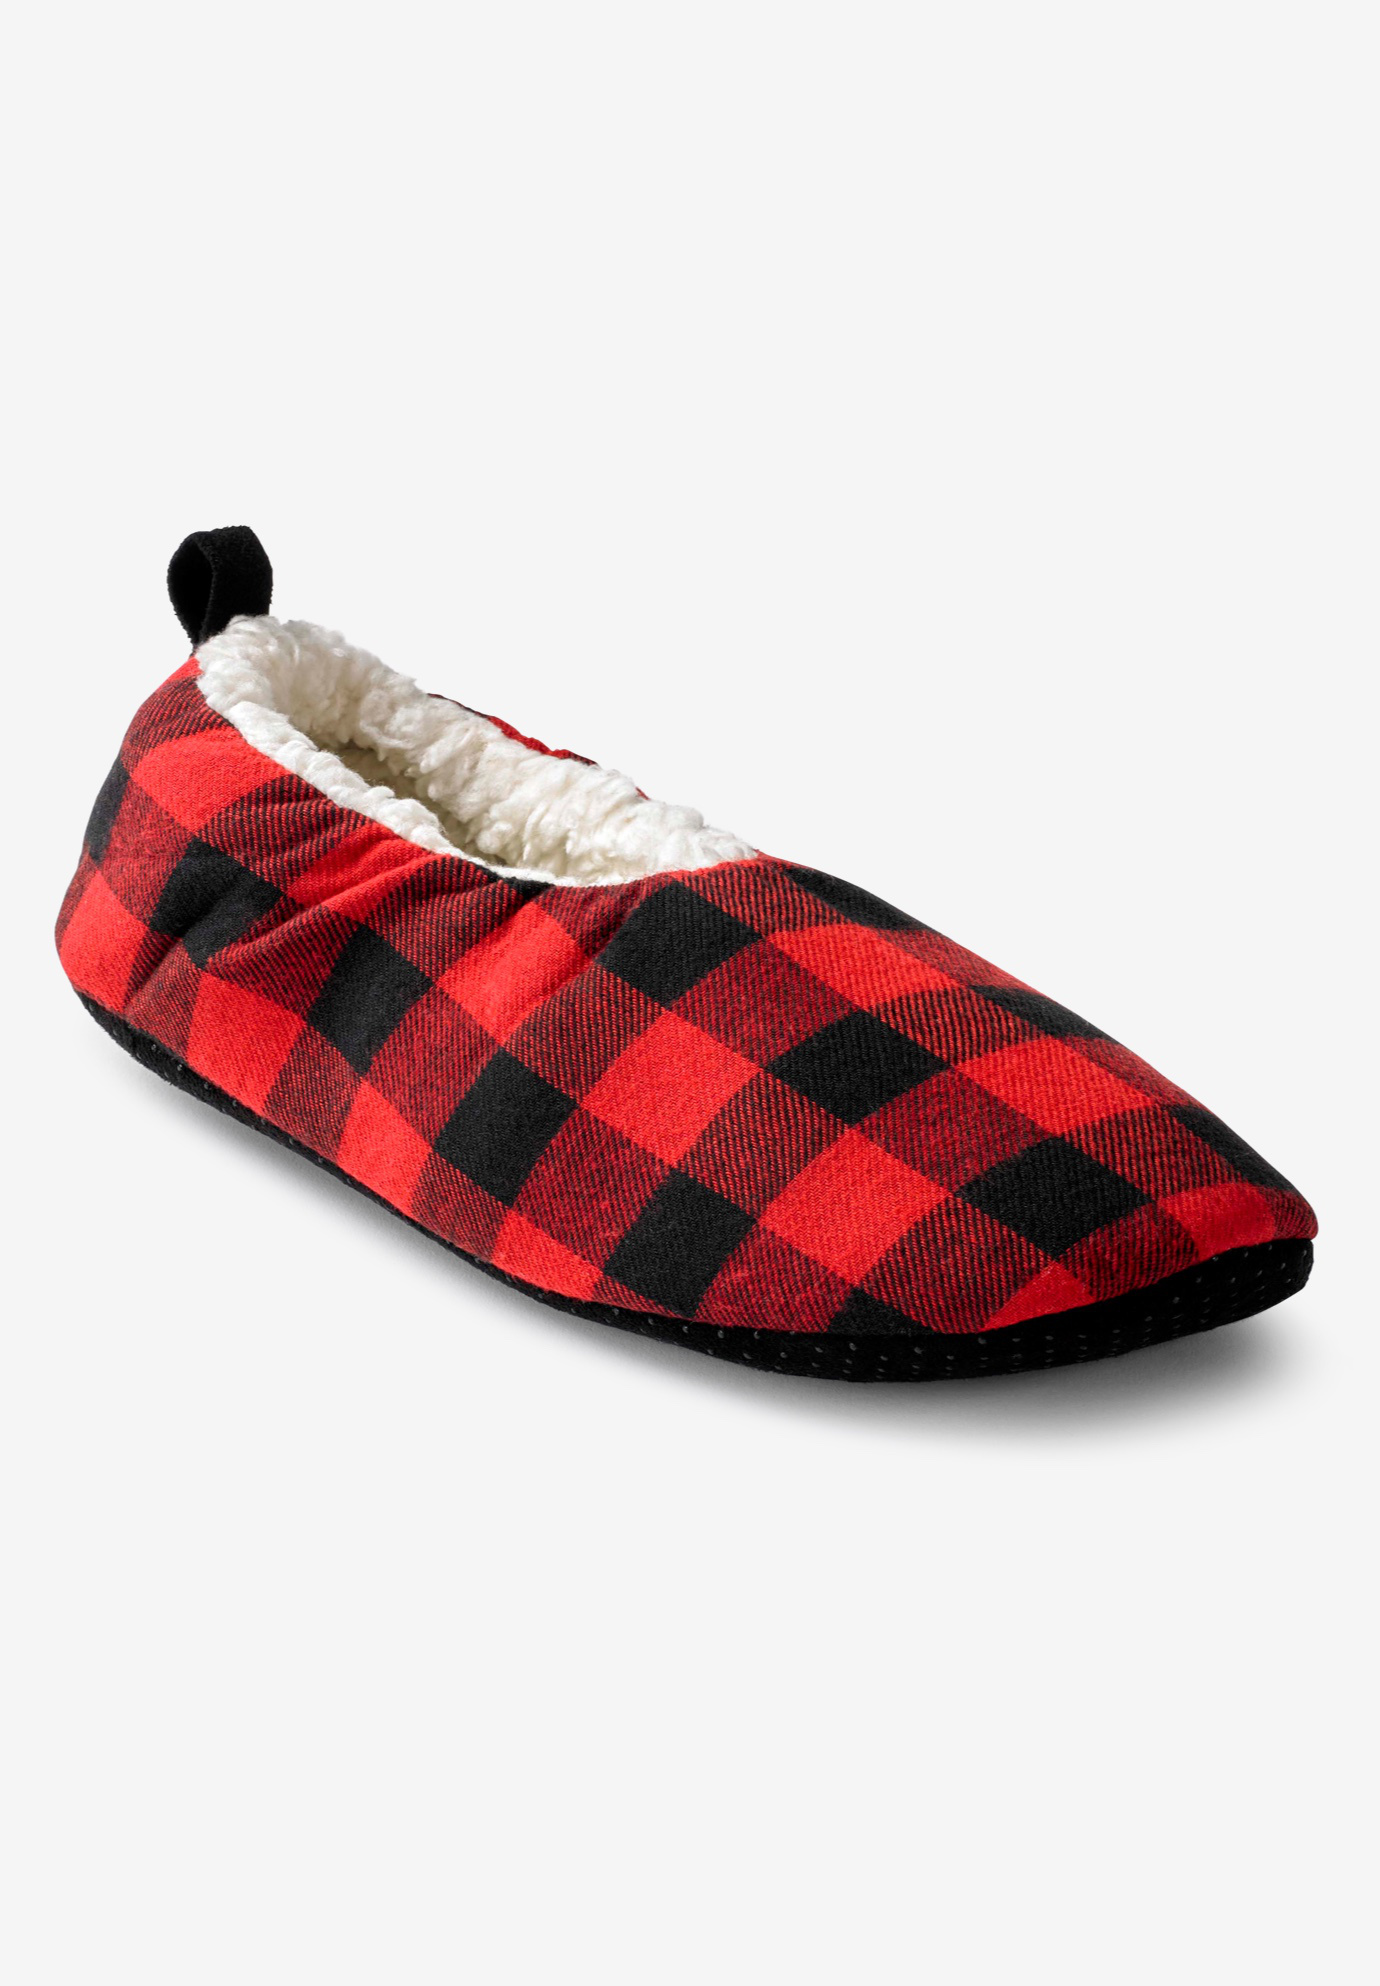 Sherpa lined sock slipper, 